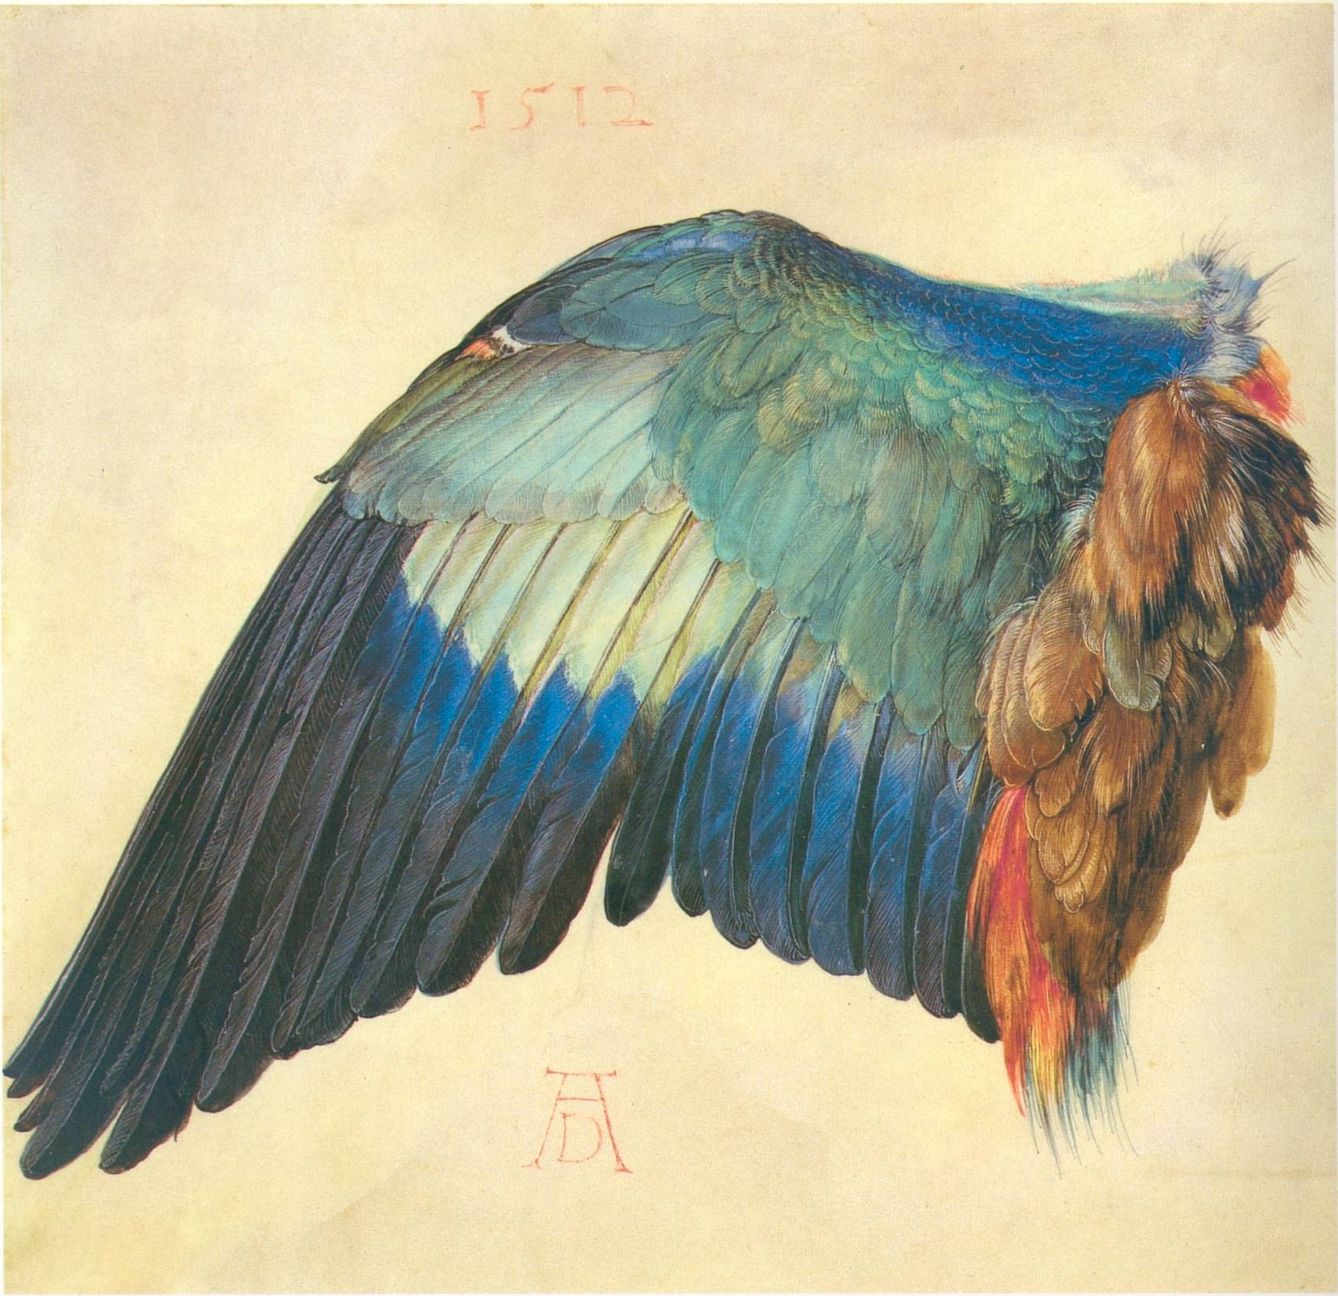 'Ala de pájaro', Alberto Durero, 1512. Albertina, Viena.